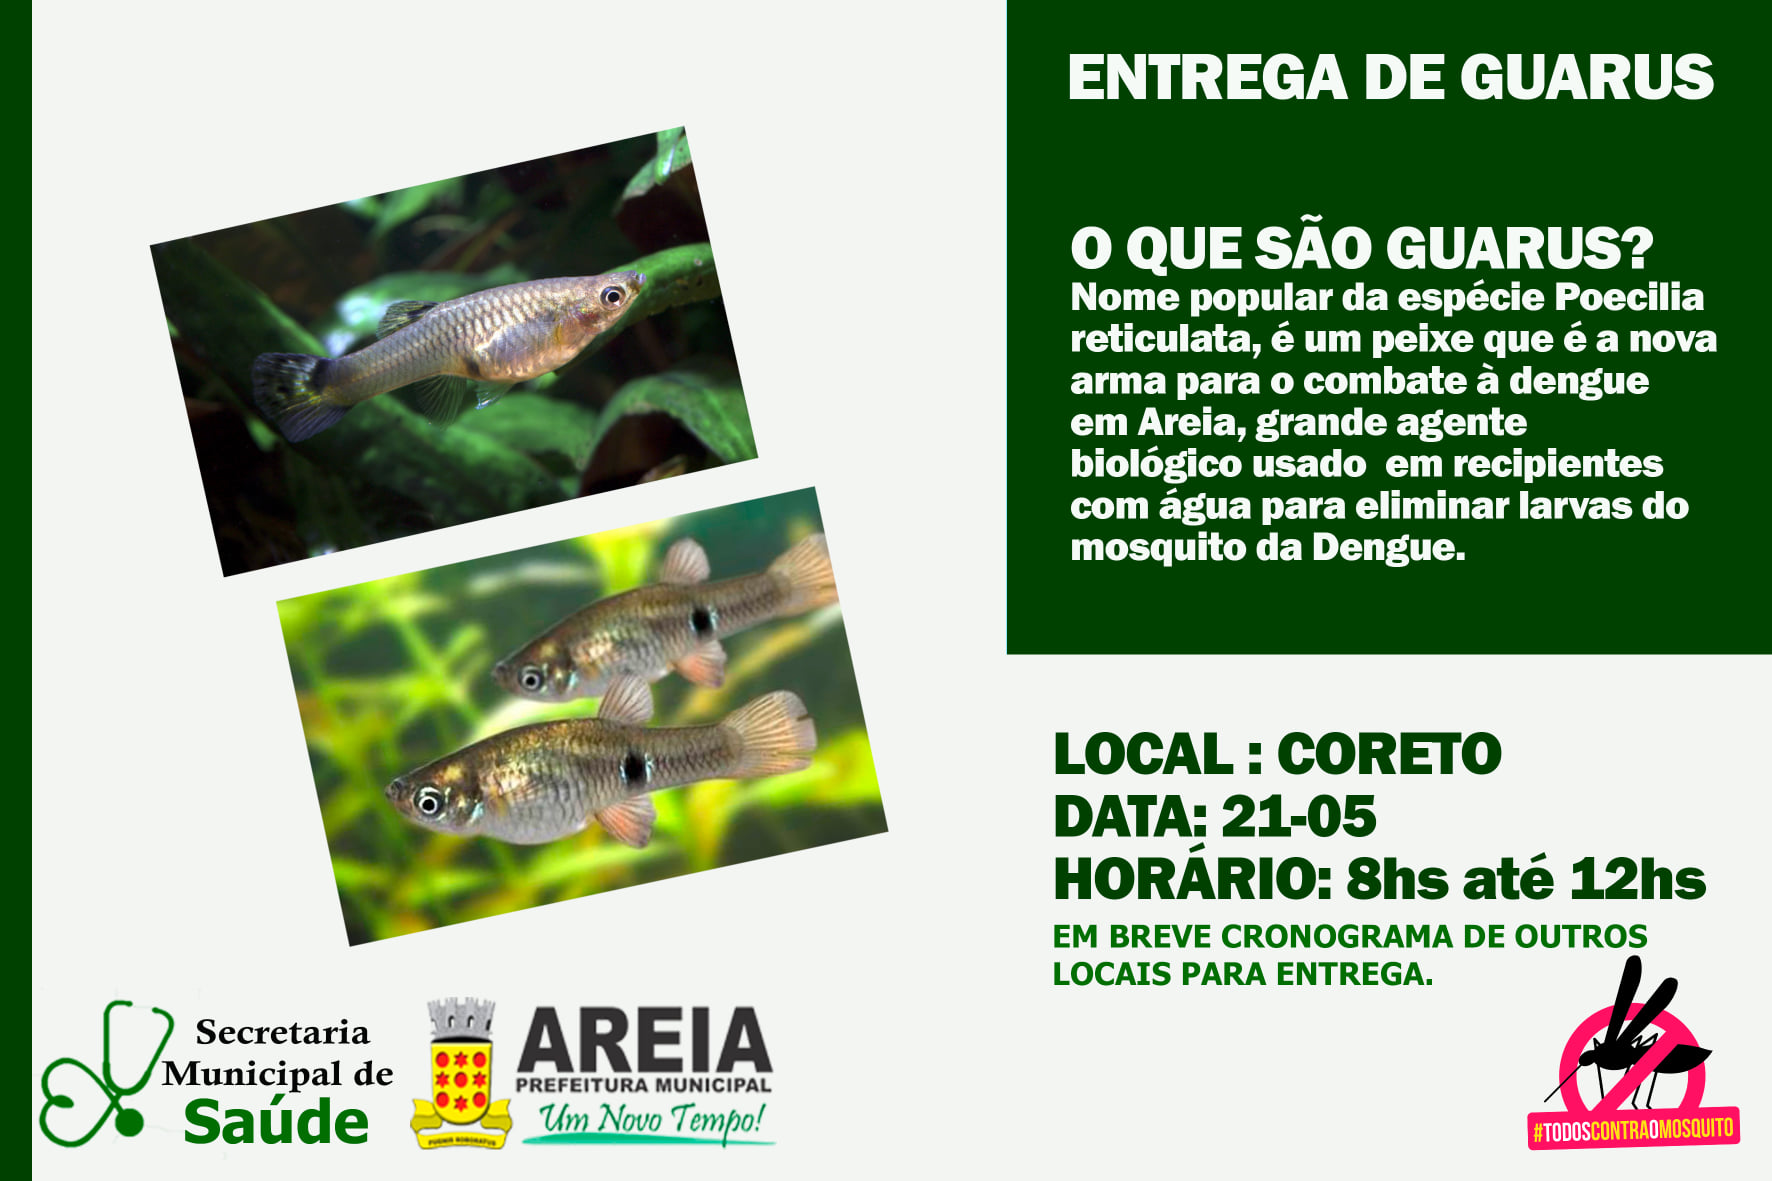 Vigilância Ambiental de Areia realiza entrega de Guarus, agente biológico utilizado no combate ao mosquito transmissor da Dengue